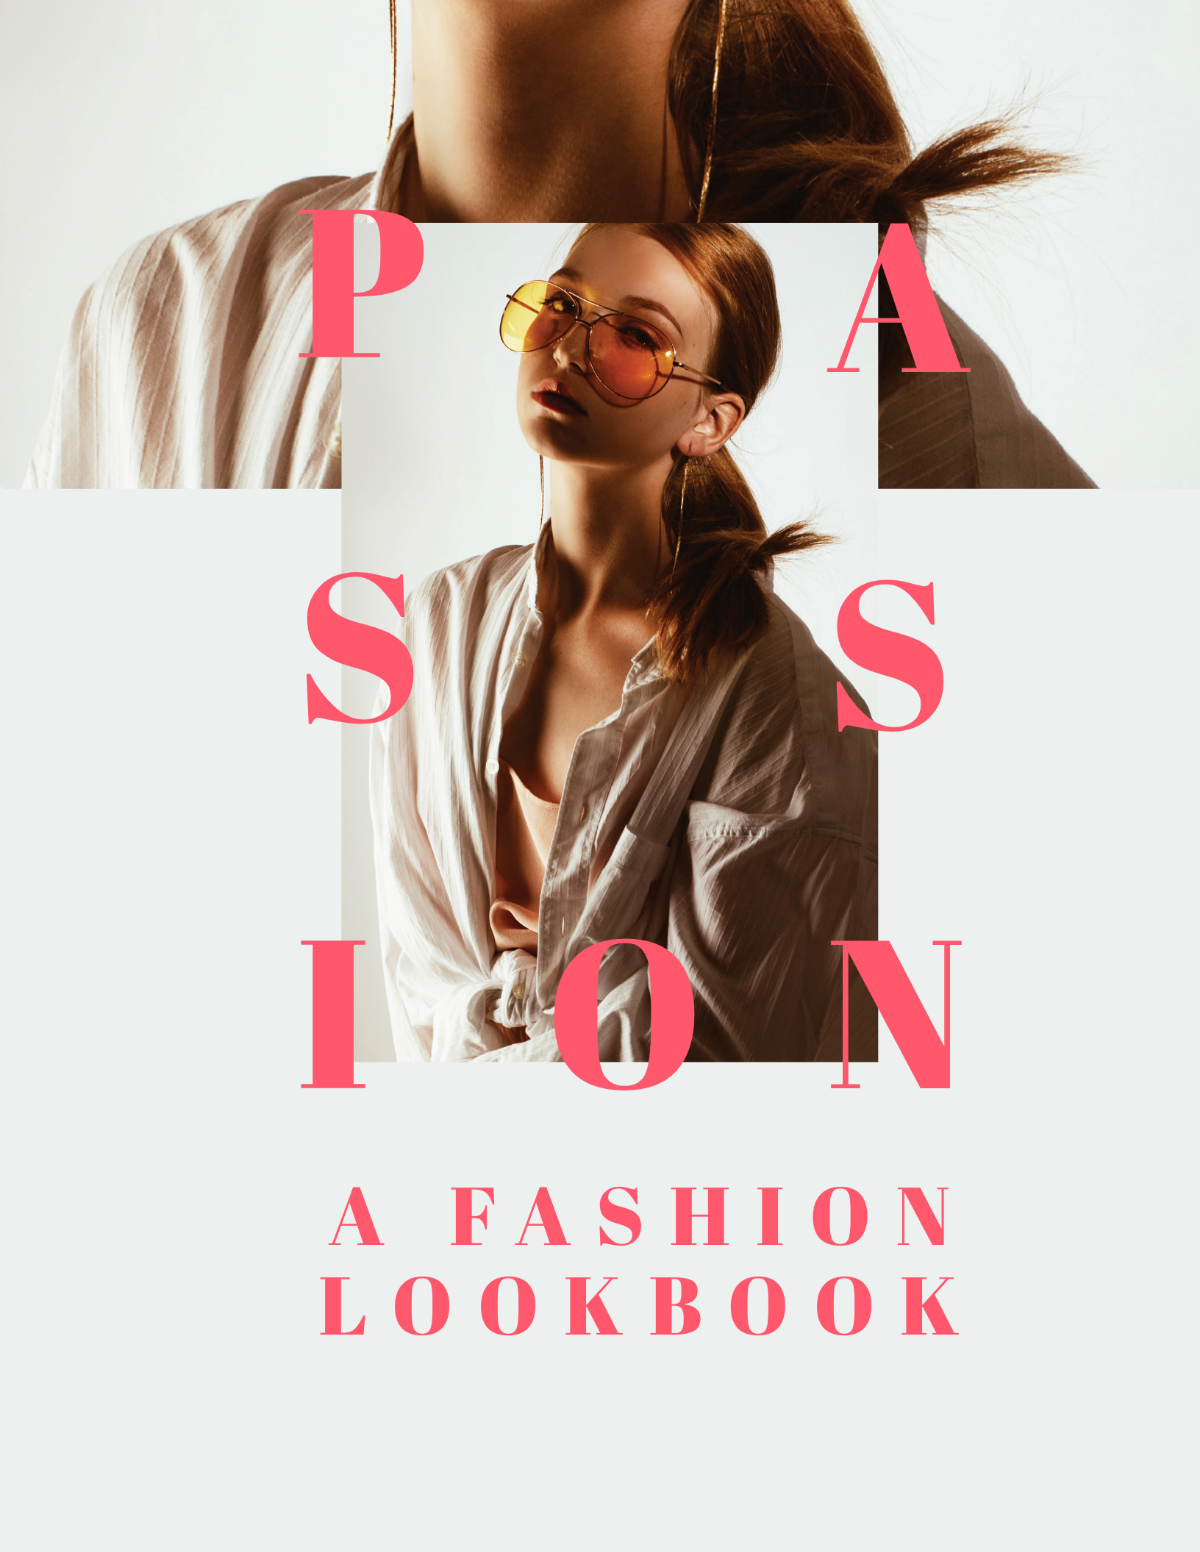 Fashion Company Profile Lookbook